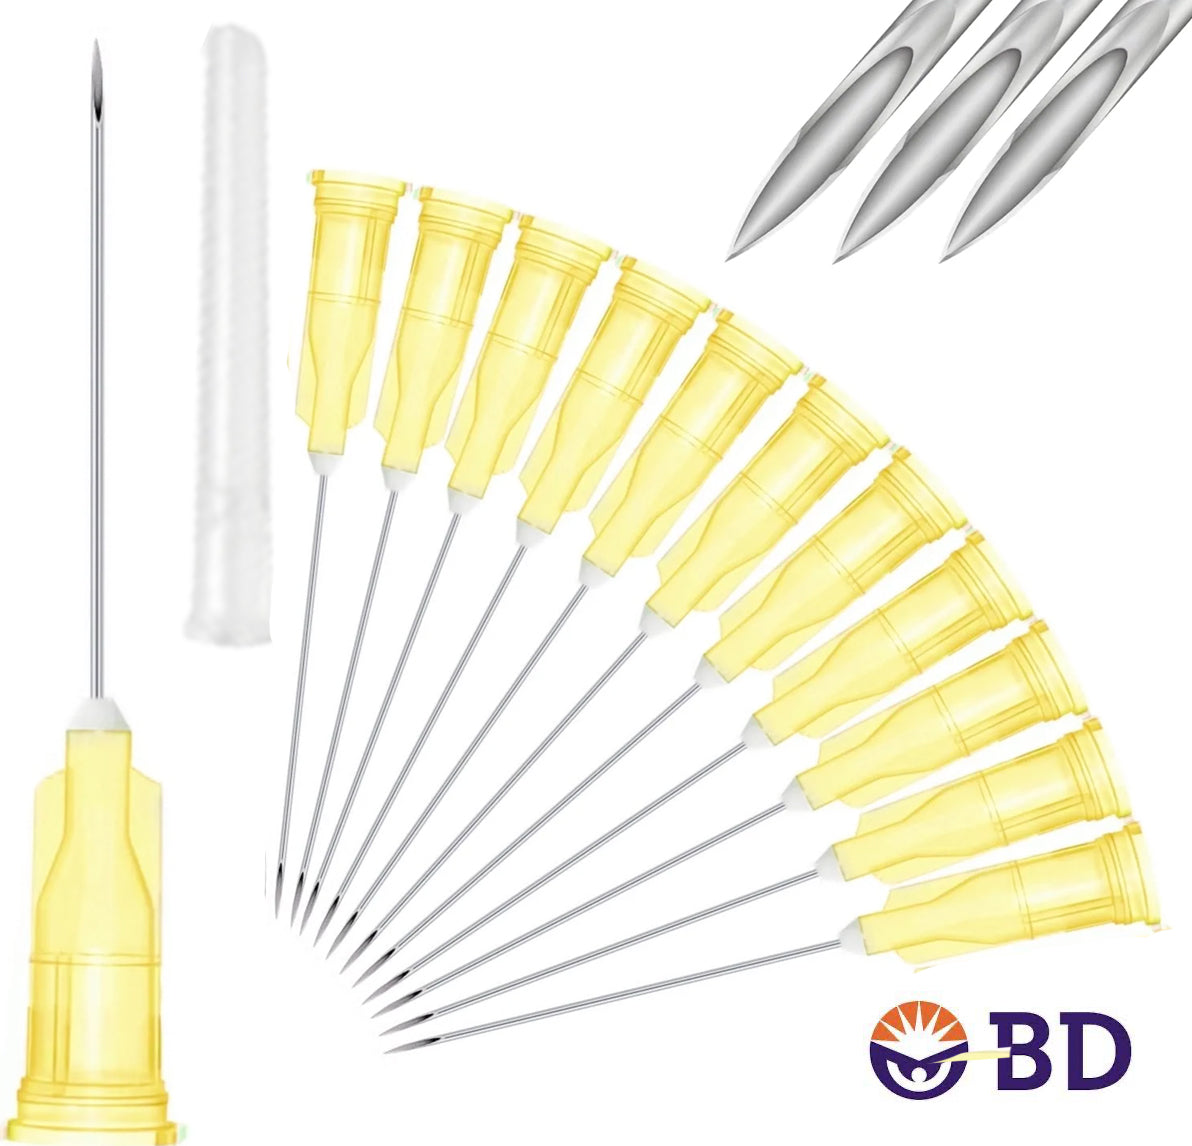 BD 20G x 1.5" Medical Needle (10pk)